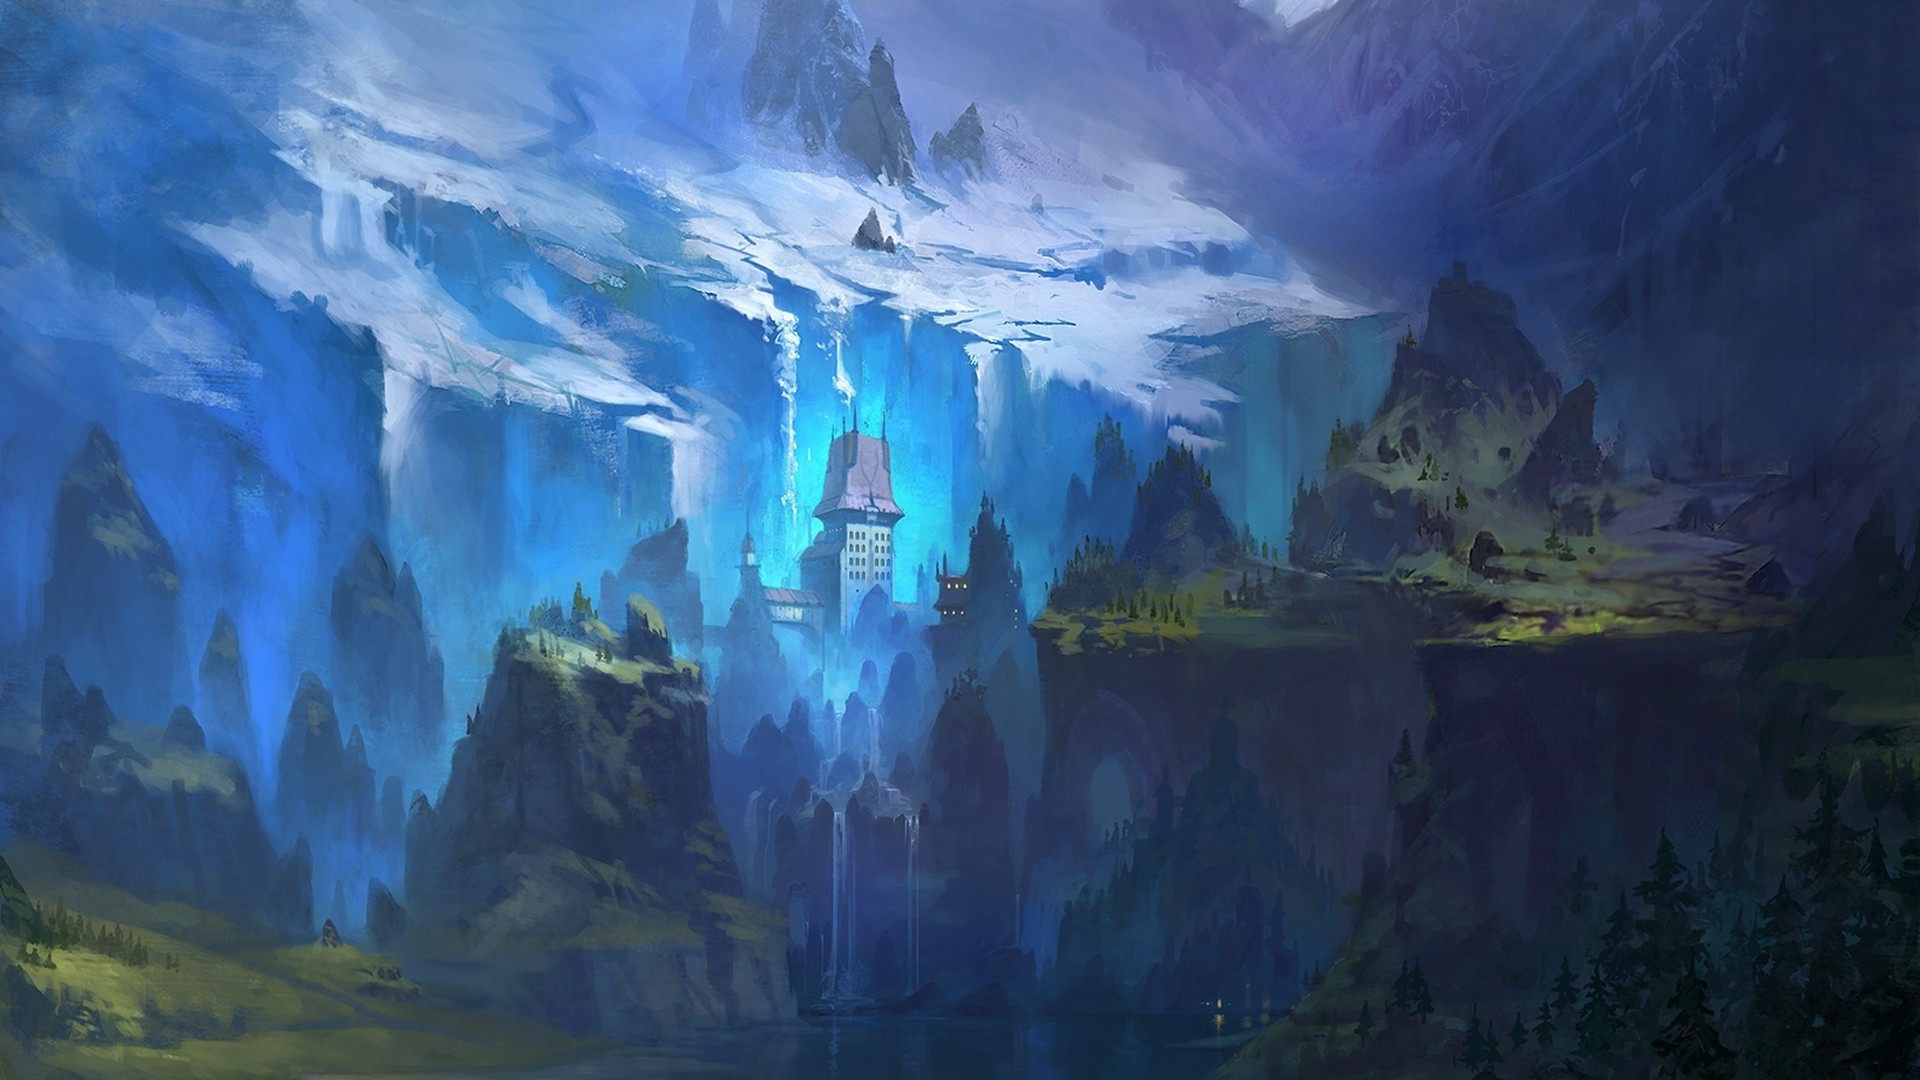 General 1920x1080 fantasy art landscape castle blue cliff mountains cyan